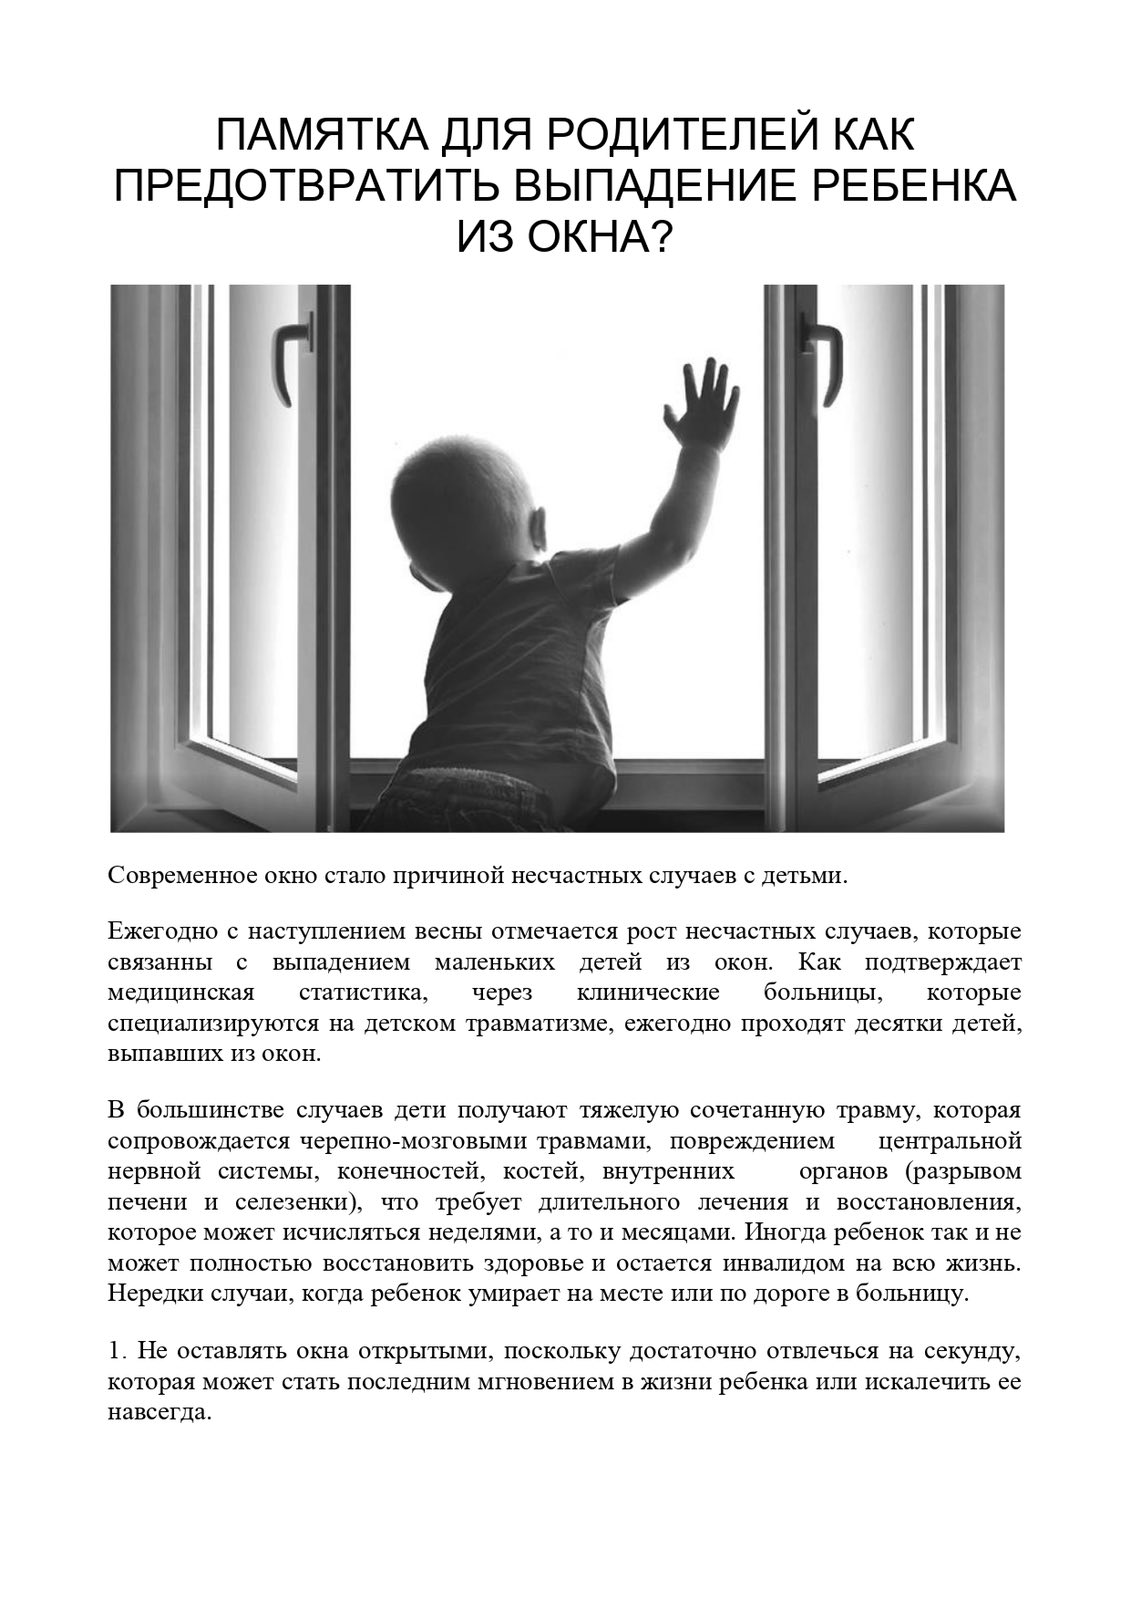 окна безопасность детей картинки